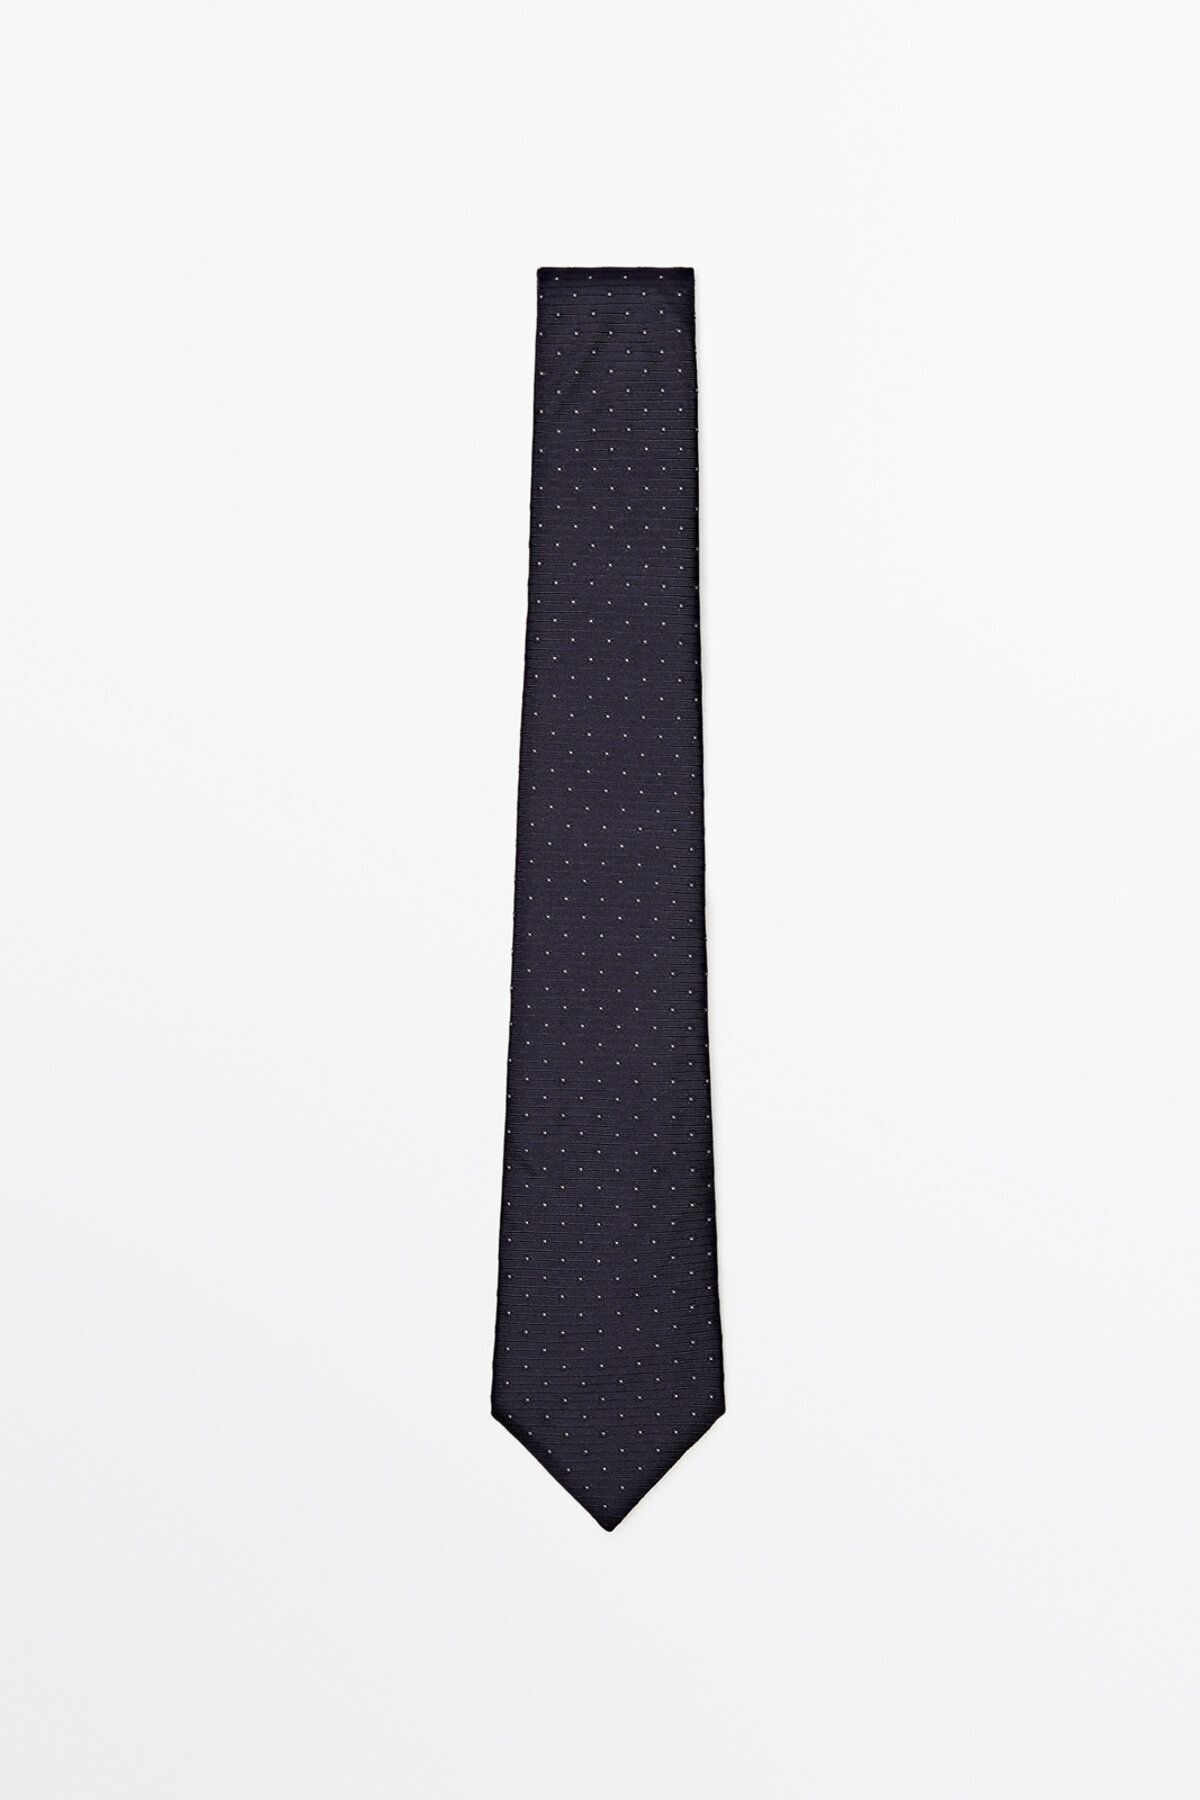 Massimo Dutti %100 ipek dokulu kravat